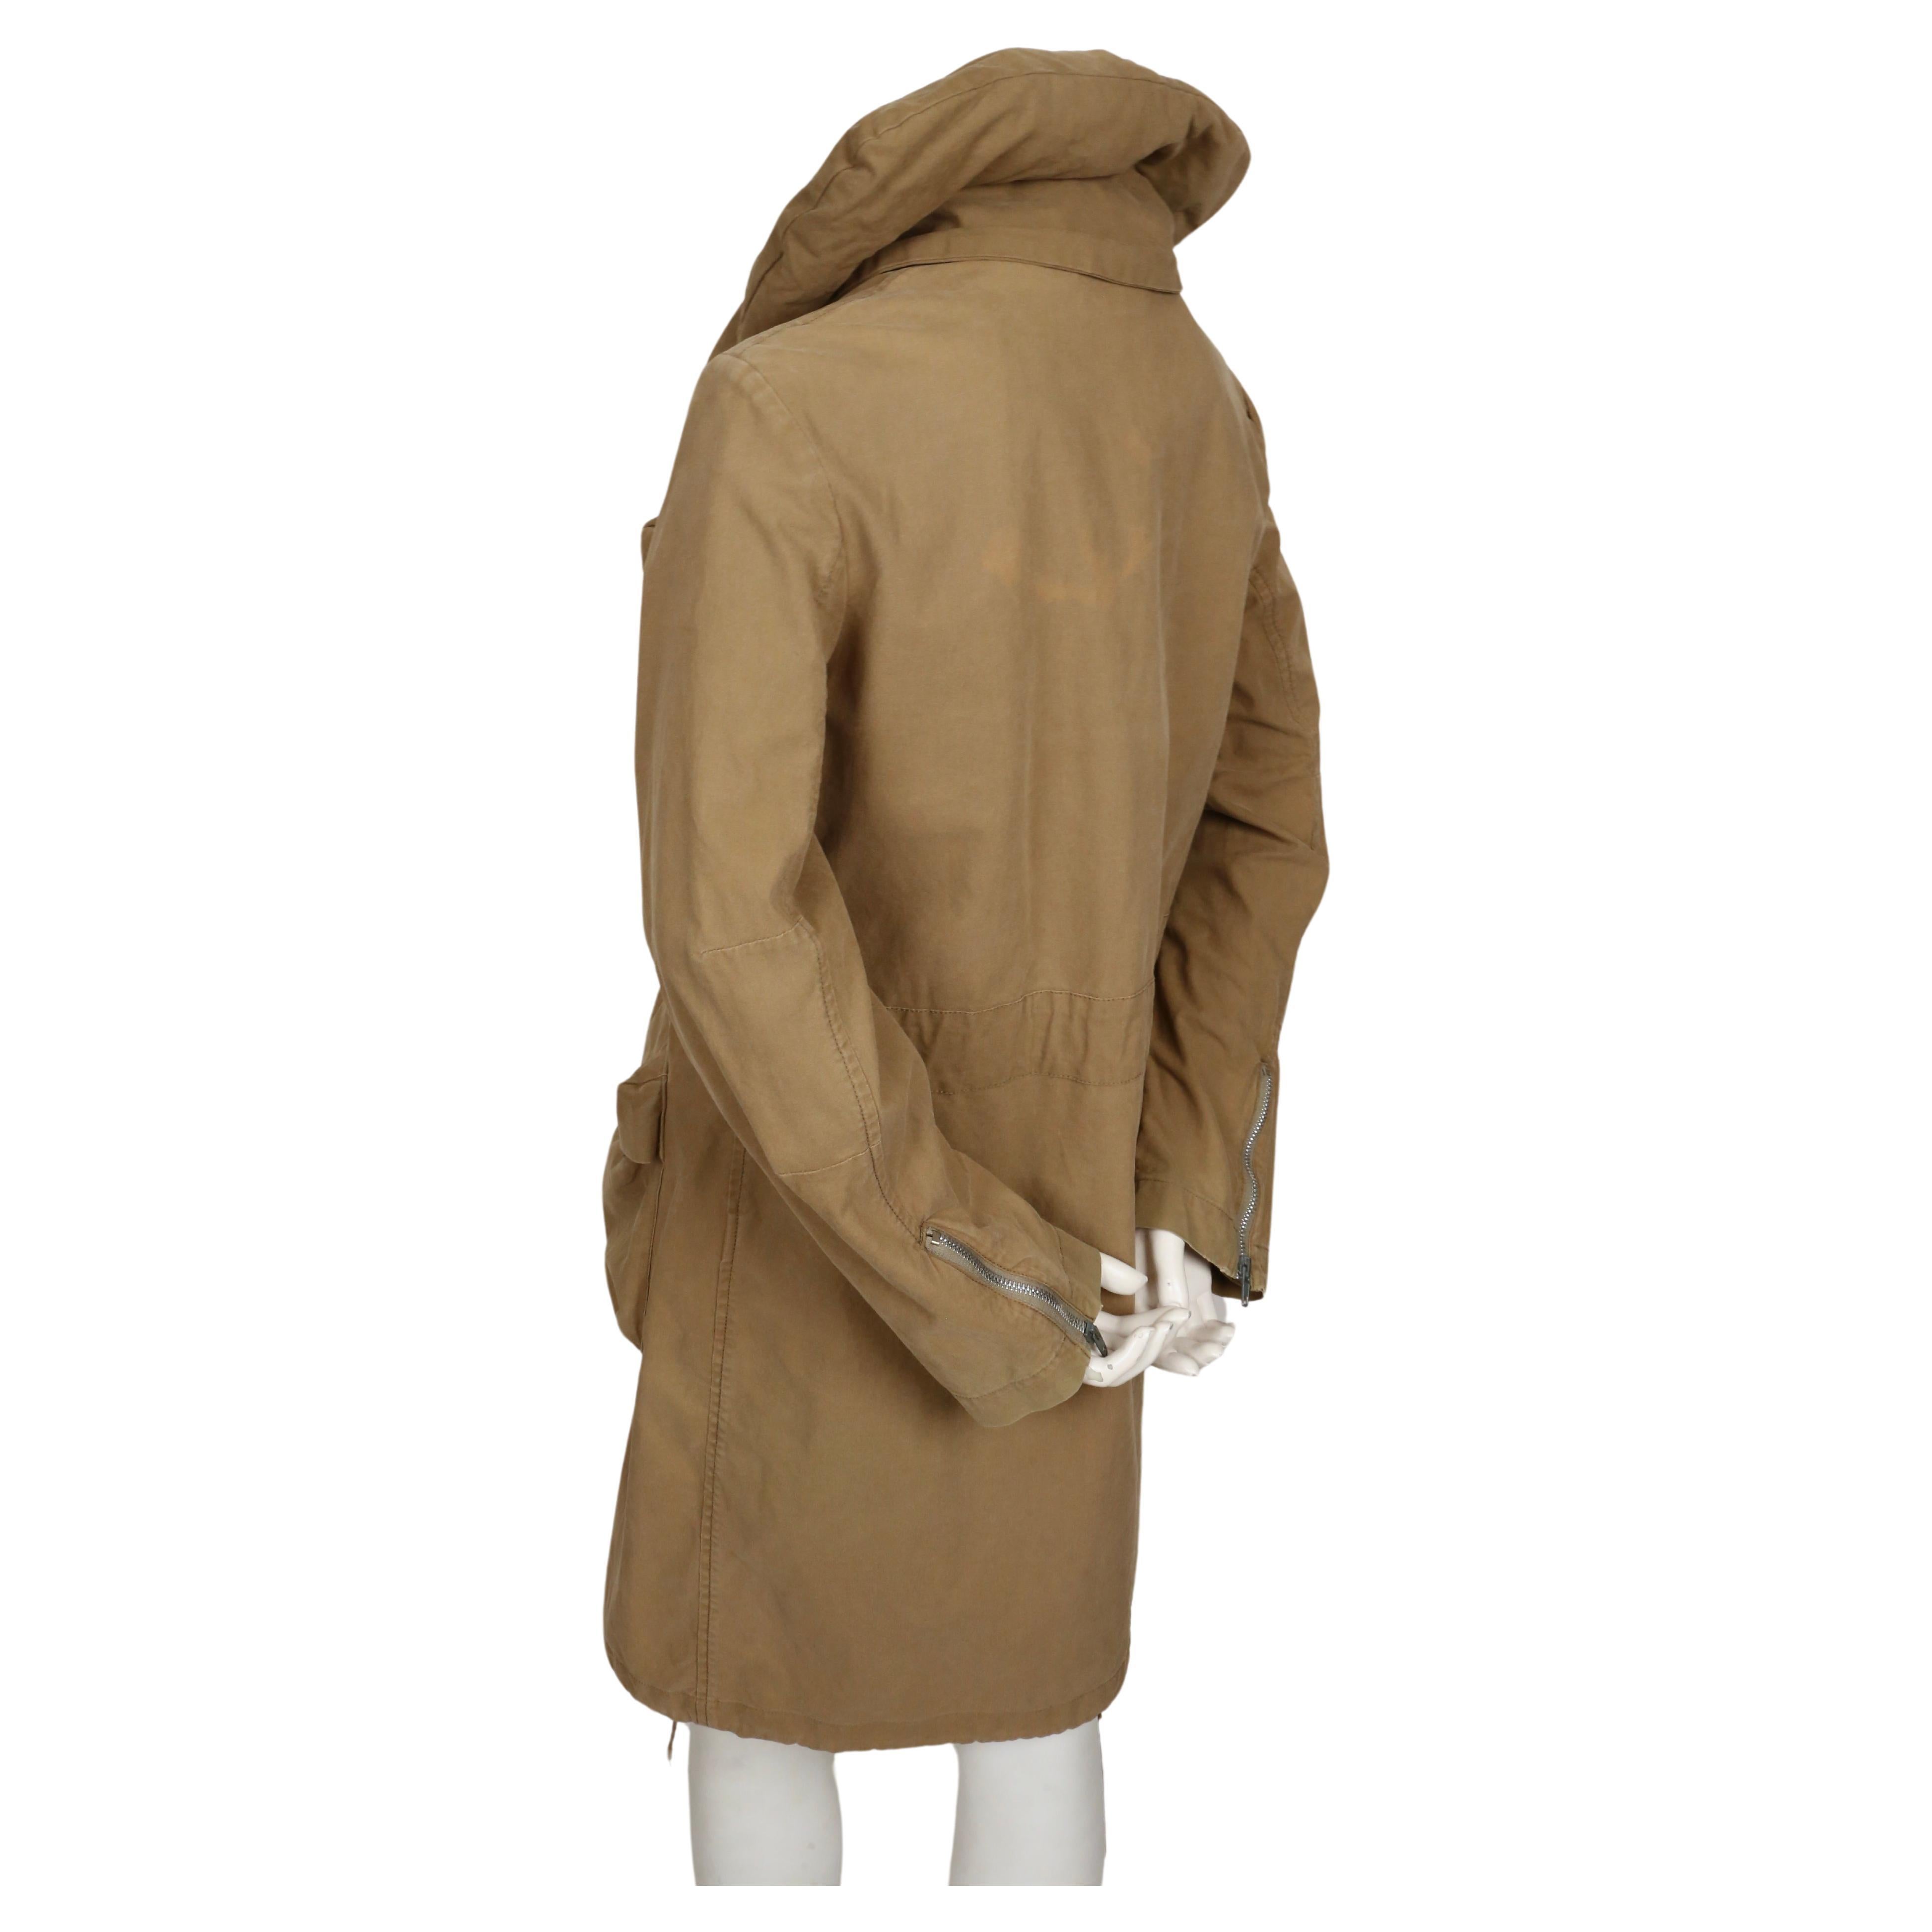 1999 HELMUT LANG vintage parka coat with padded collar & bondage straps  1